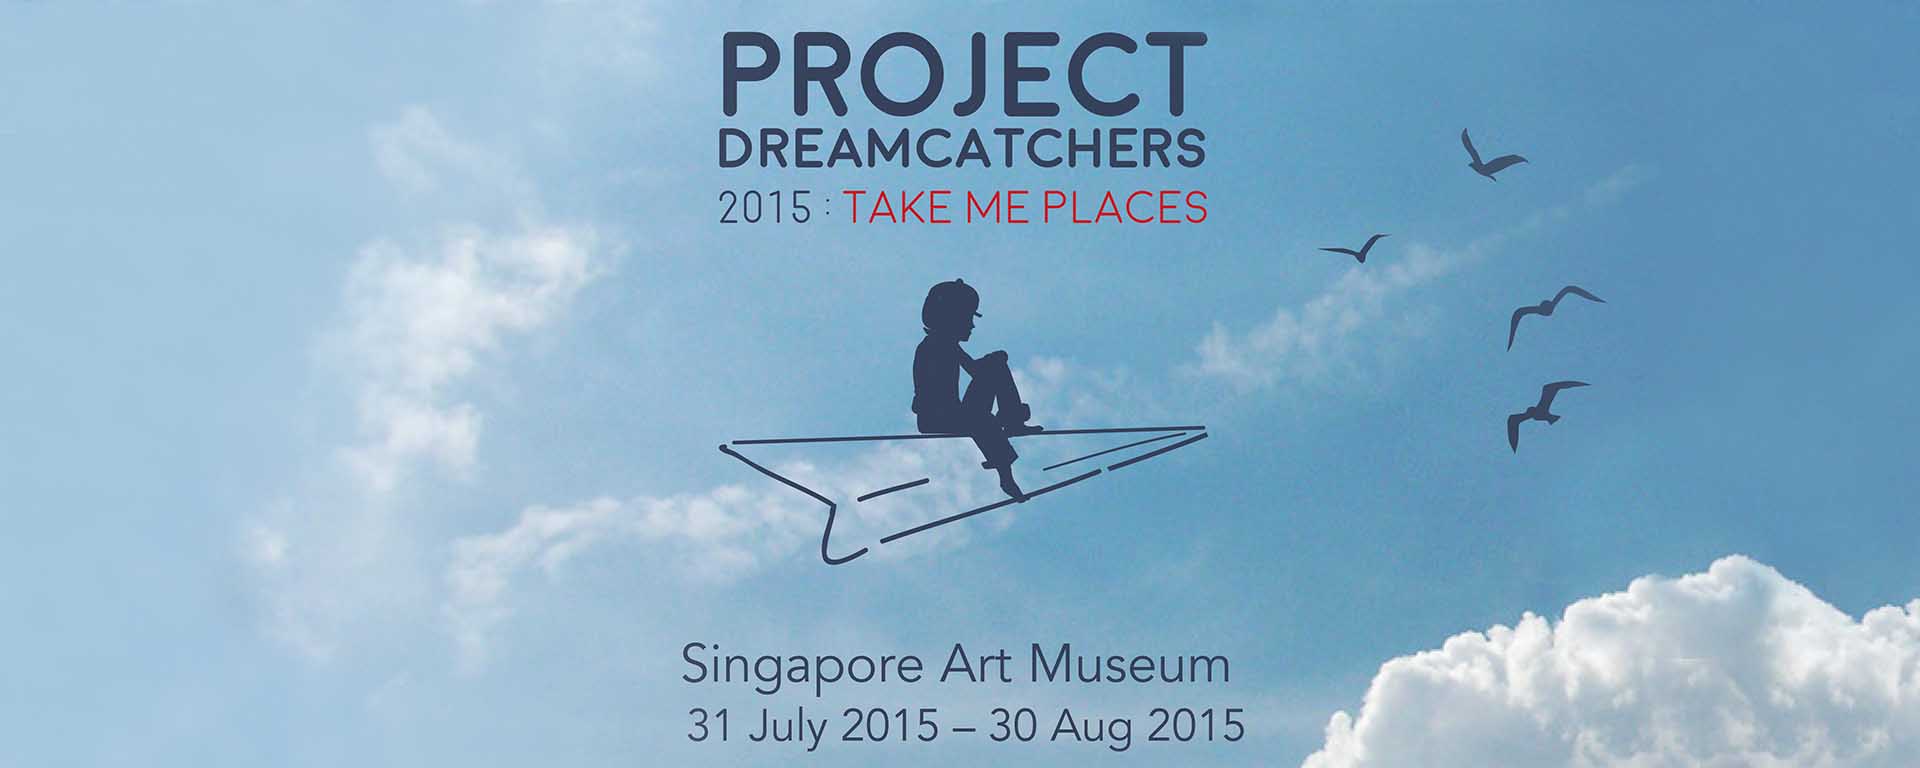 Project Dreamcatchers 2015